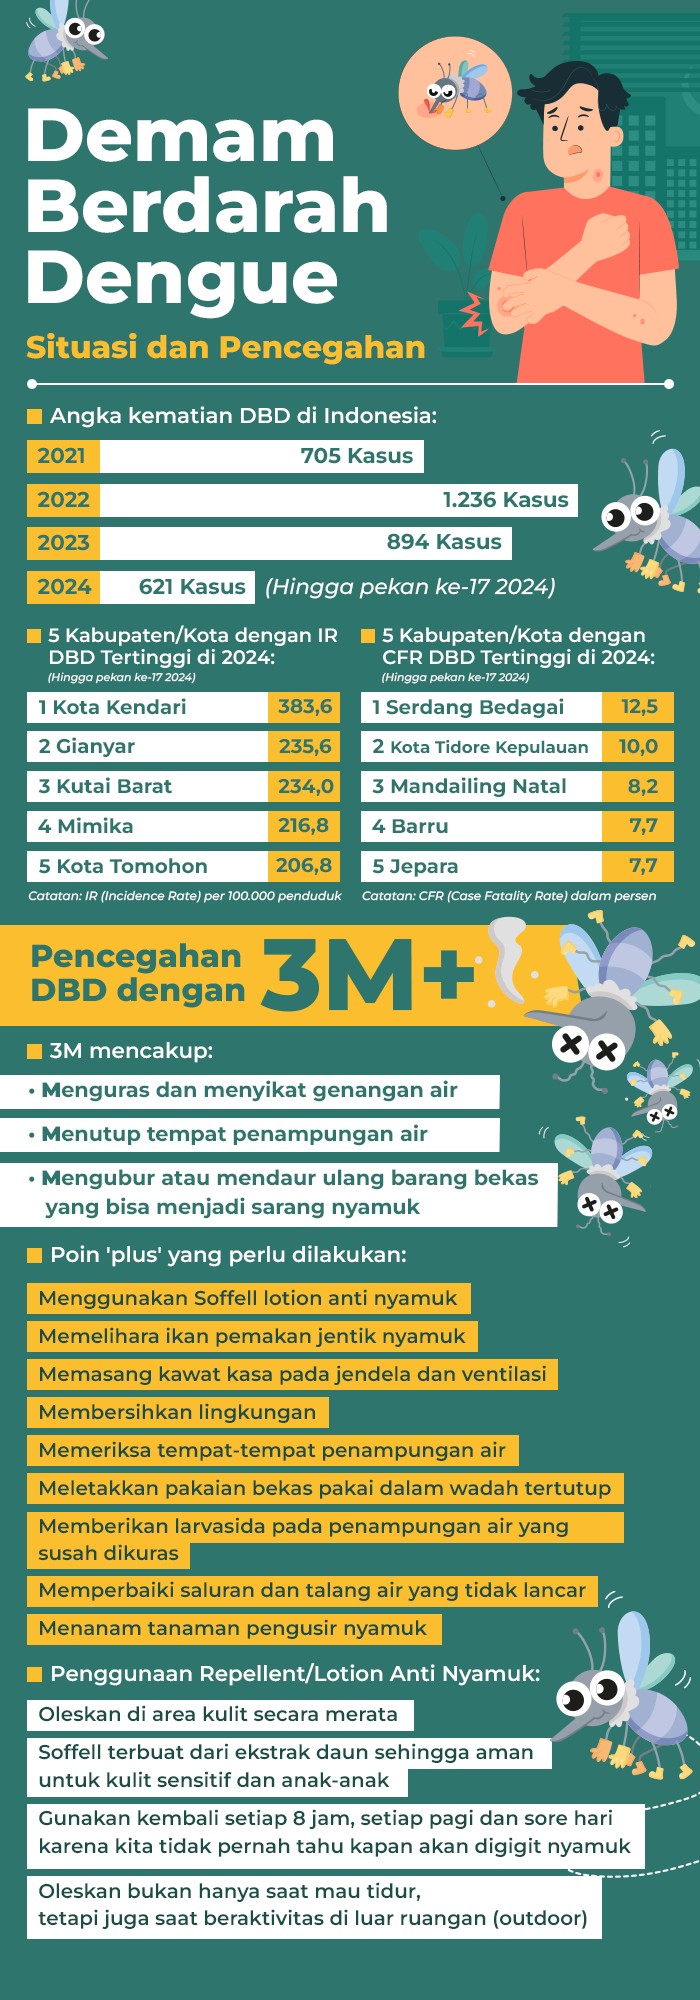 Situasi dan pencegahan Demam Berdarah Dengue (DBD) - Infografis